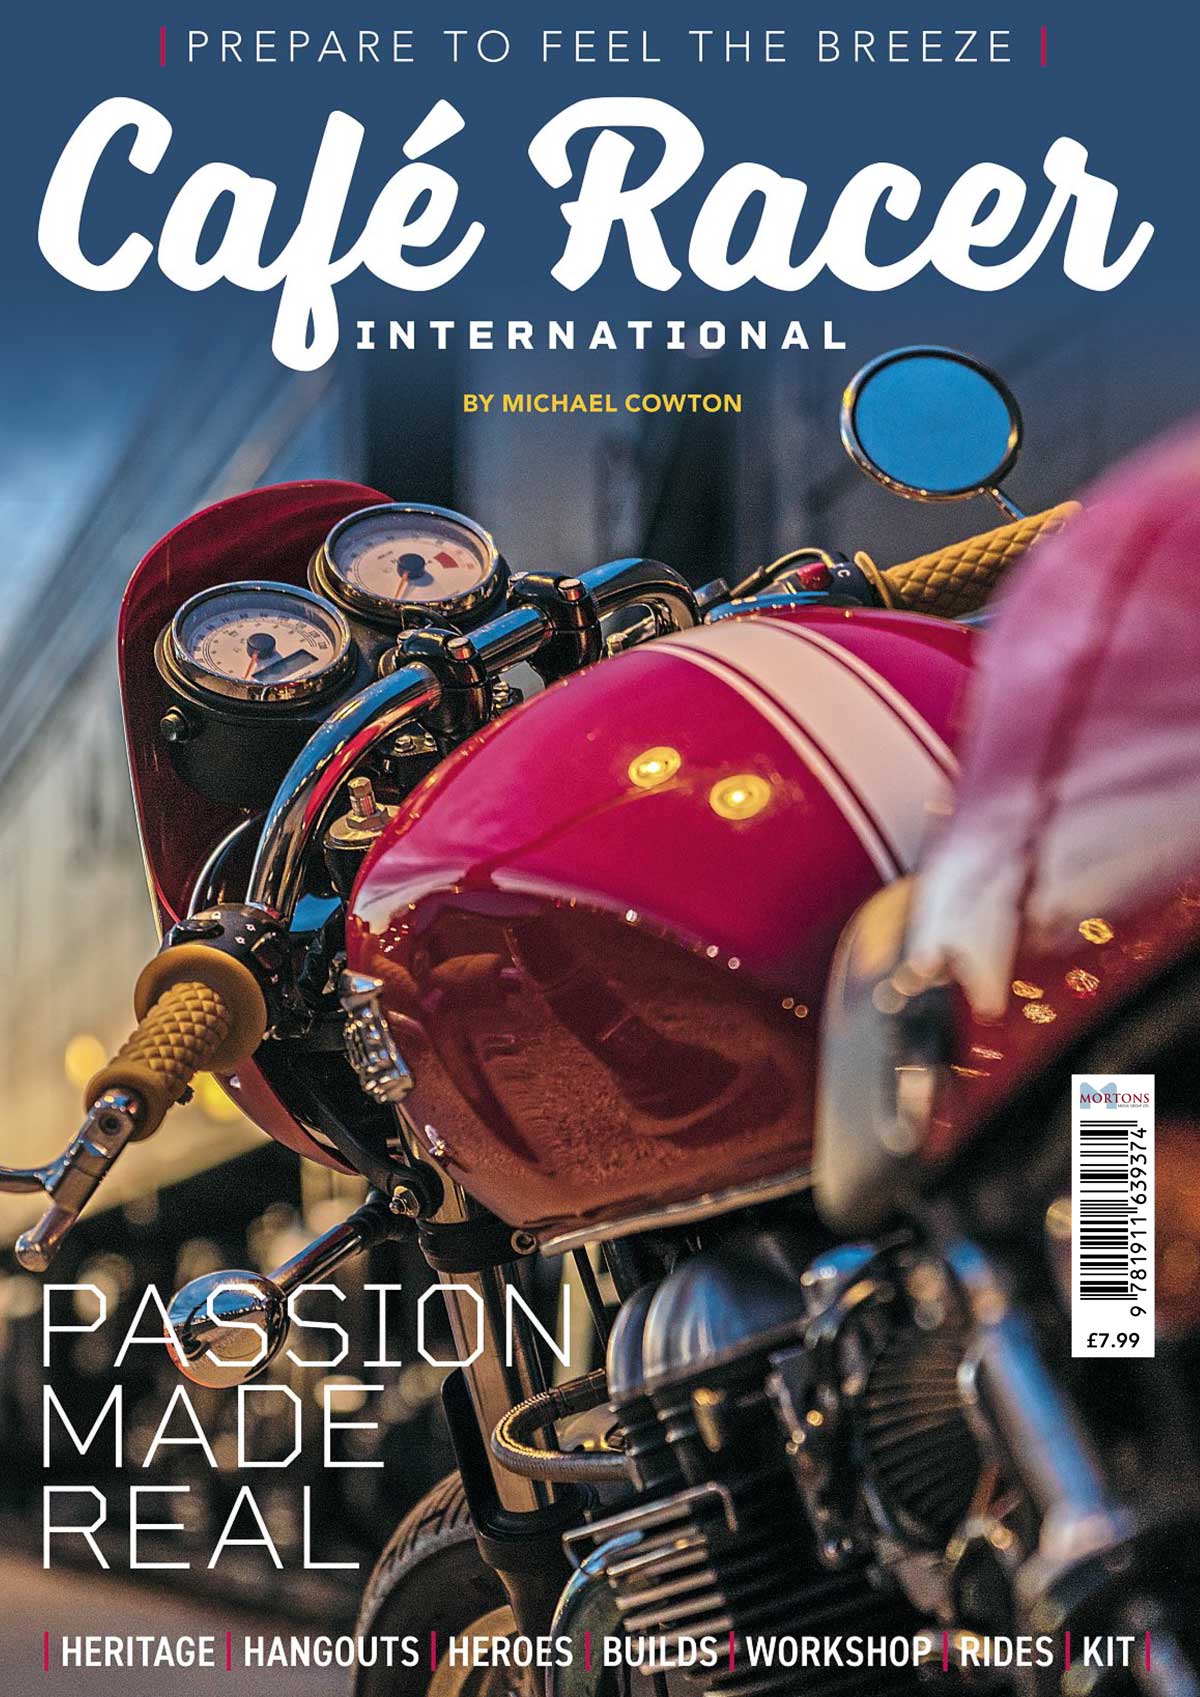 Café Racer International available now!